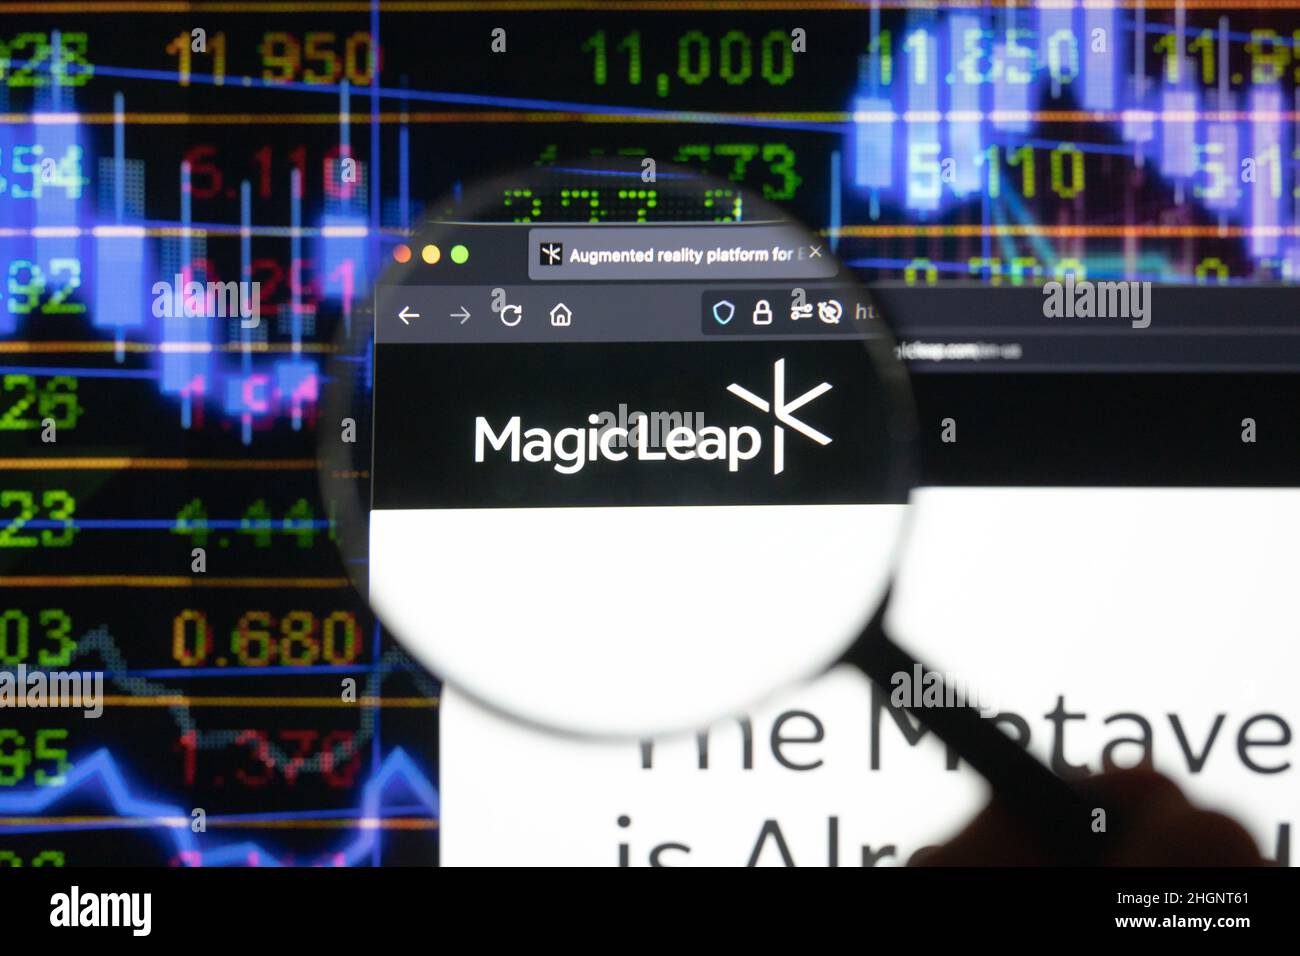 Magic Leap logotipo de la empresa en un sitio web con la borrosa evolución del mercado de valores en el fondo, visto en una pantalla de ordenador a través de una lupa. Foto de stock